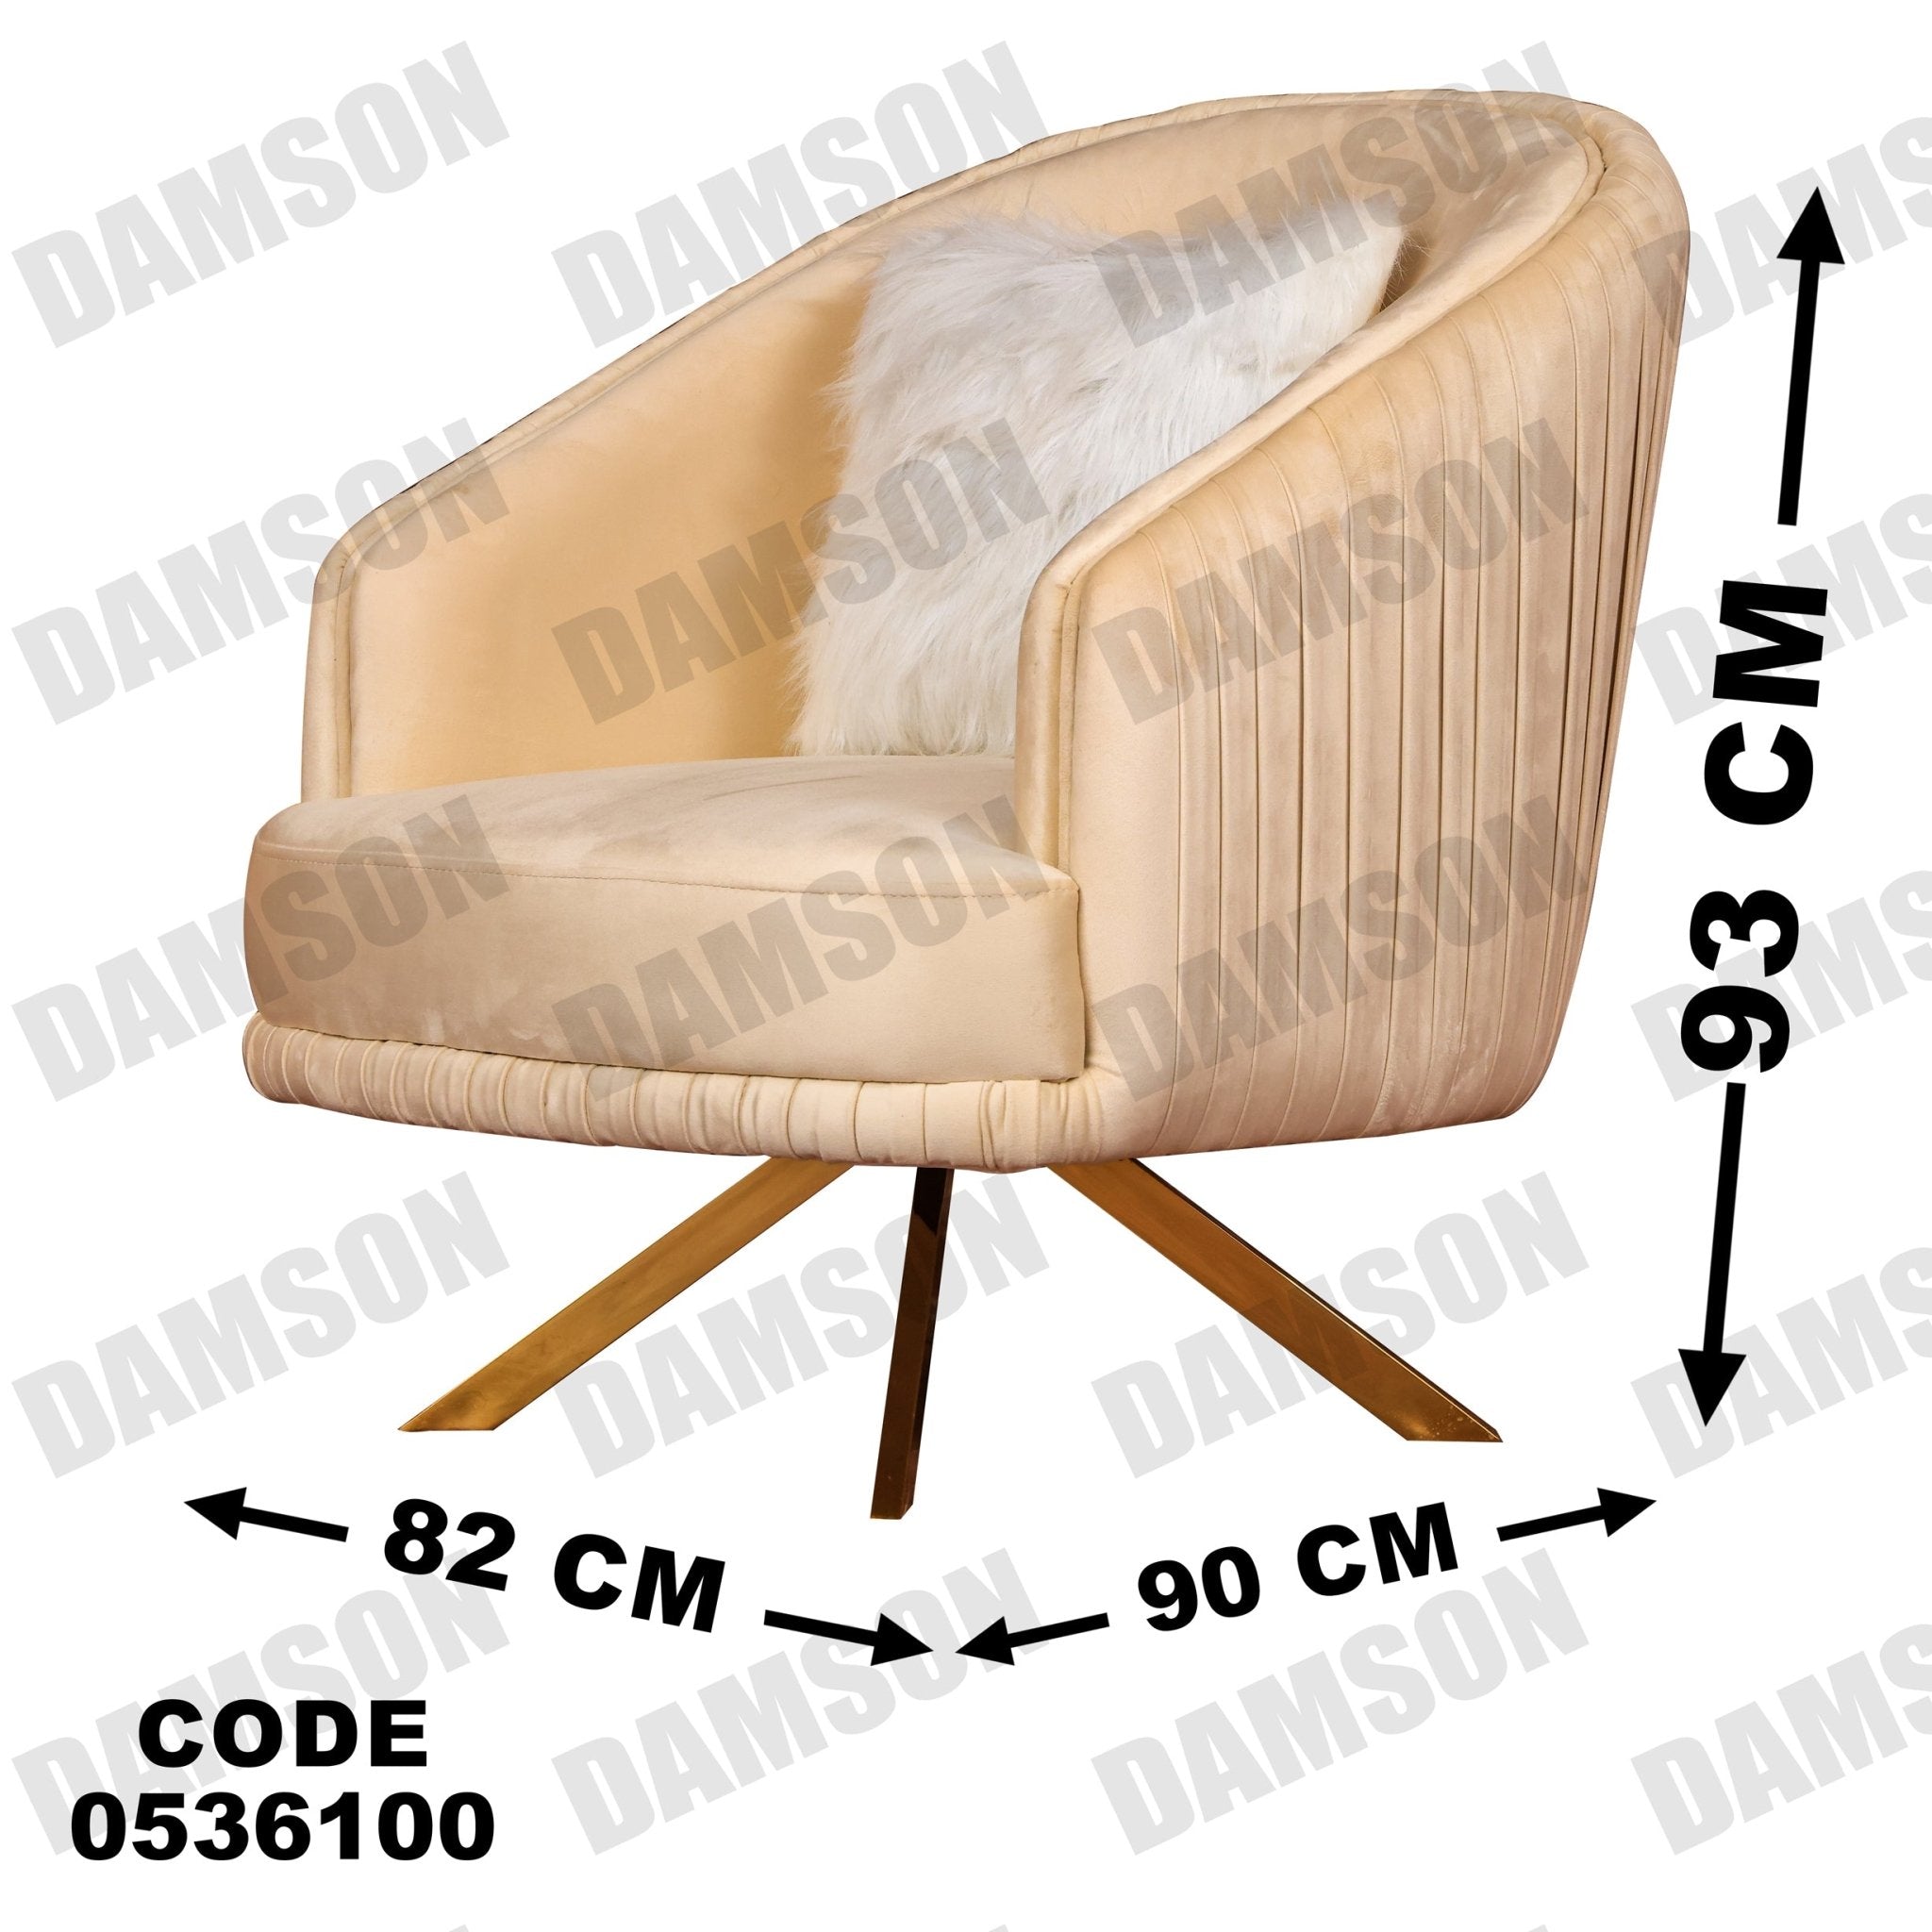 انترية 361 - Damson Furnitureانترية 361